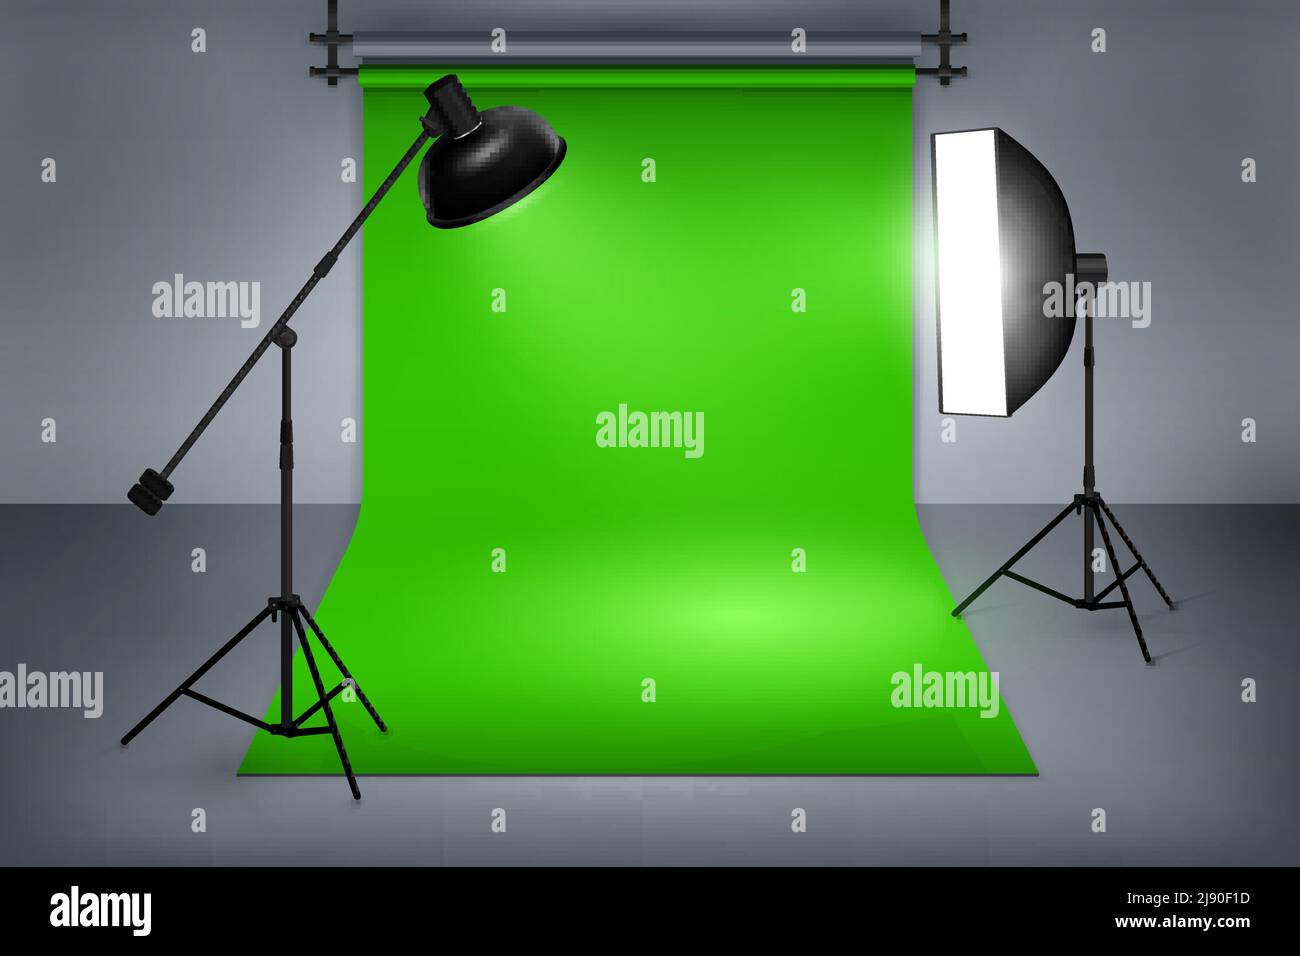 Film ou photo studio écran vert. Intérieur avec équipement, photographie et flash projecteur. Illustration vectorielle Illustration de Vecteur